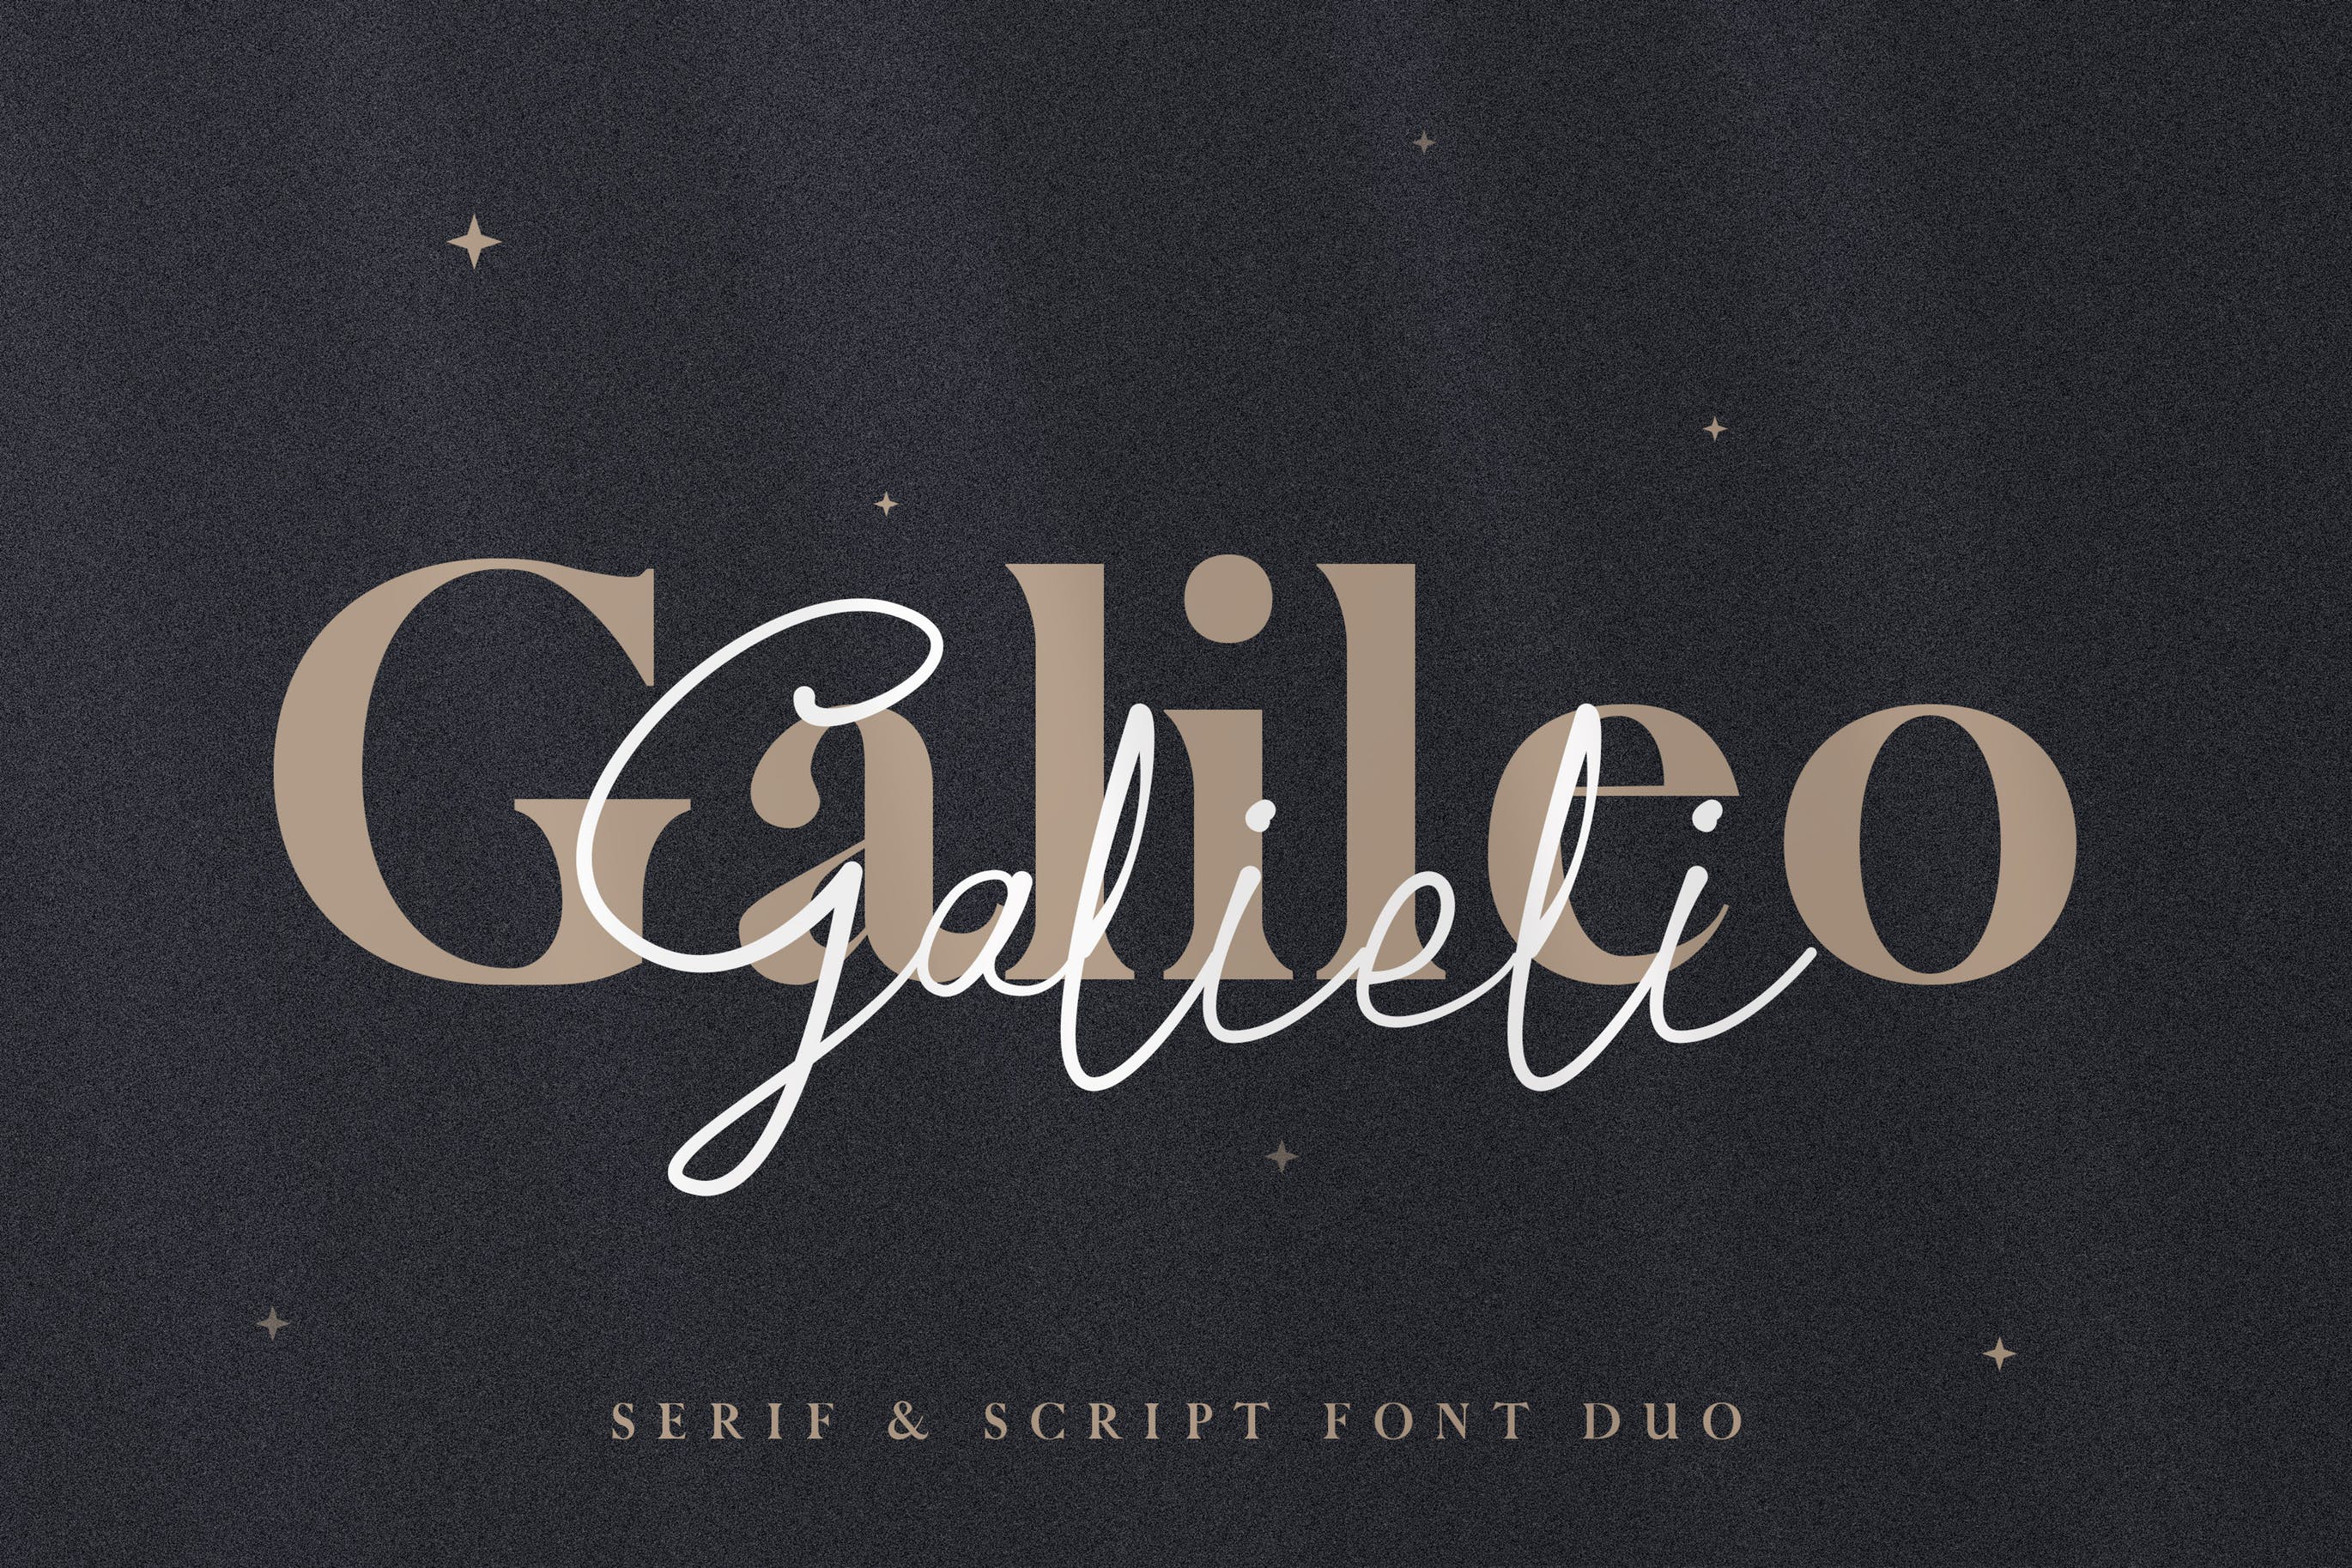 无衬线英文字体&钢笔书法英文字体下载 Galileo Galilei – Serif & Script Duo插图